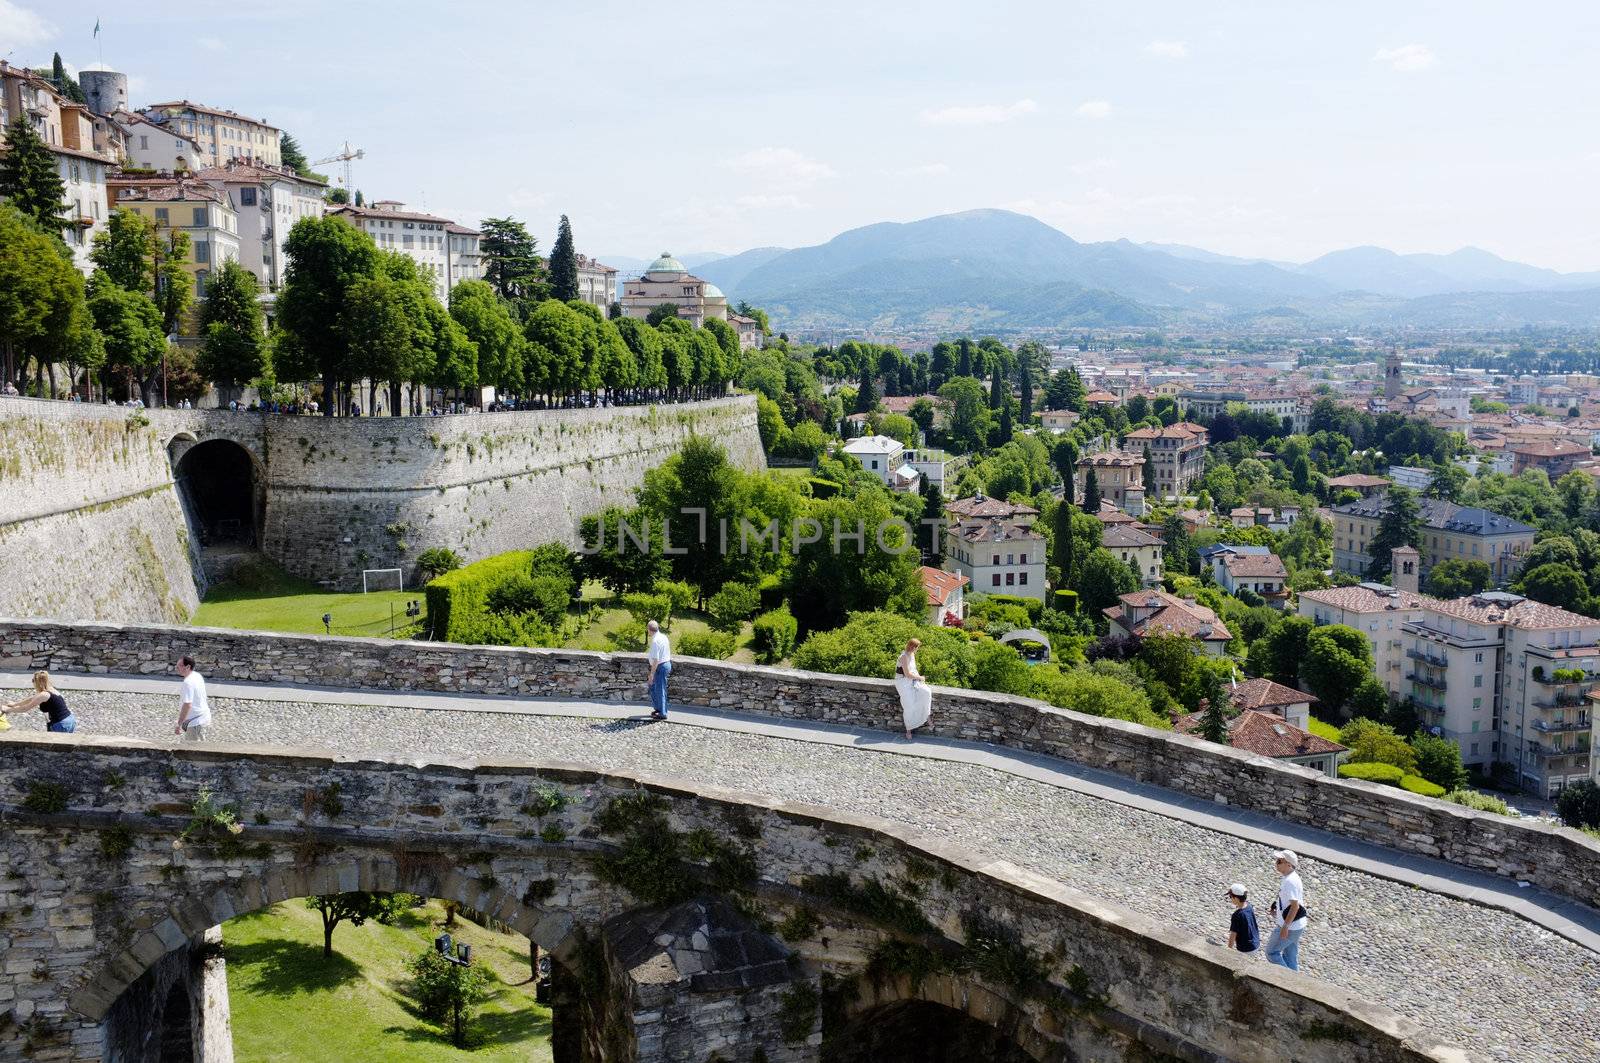 ERGAMO, LOMBARDY, ITALY - MAY 29: Scenery and the town wall of the Bergamo Citta Alta, May 29, 2011 in Bergamo, Lombardy, Italy